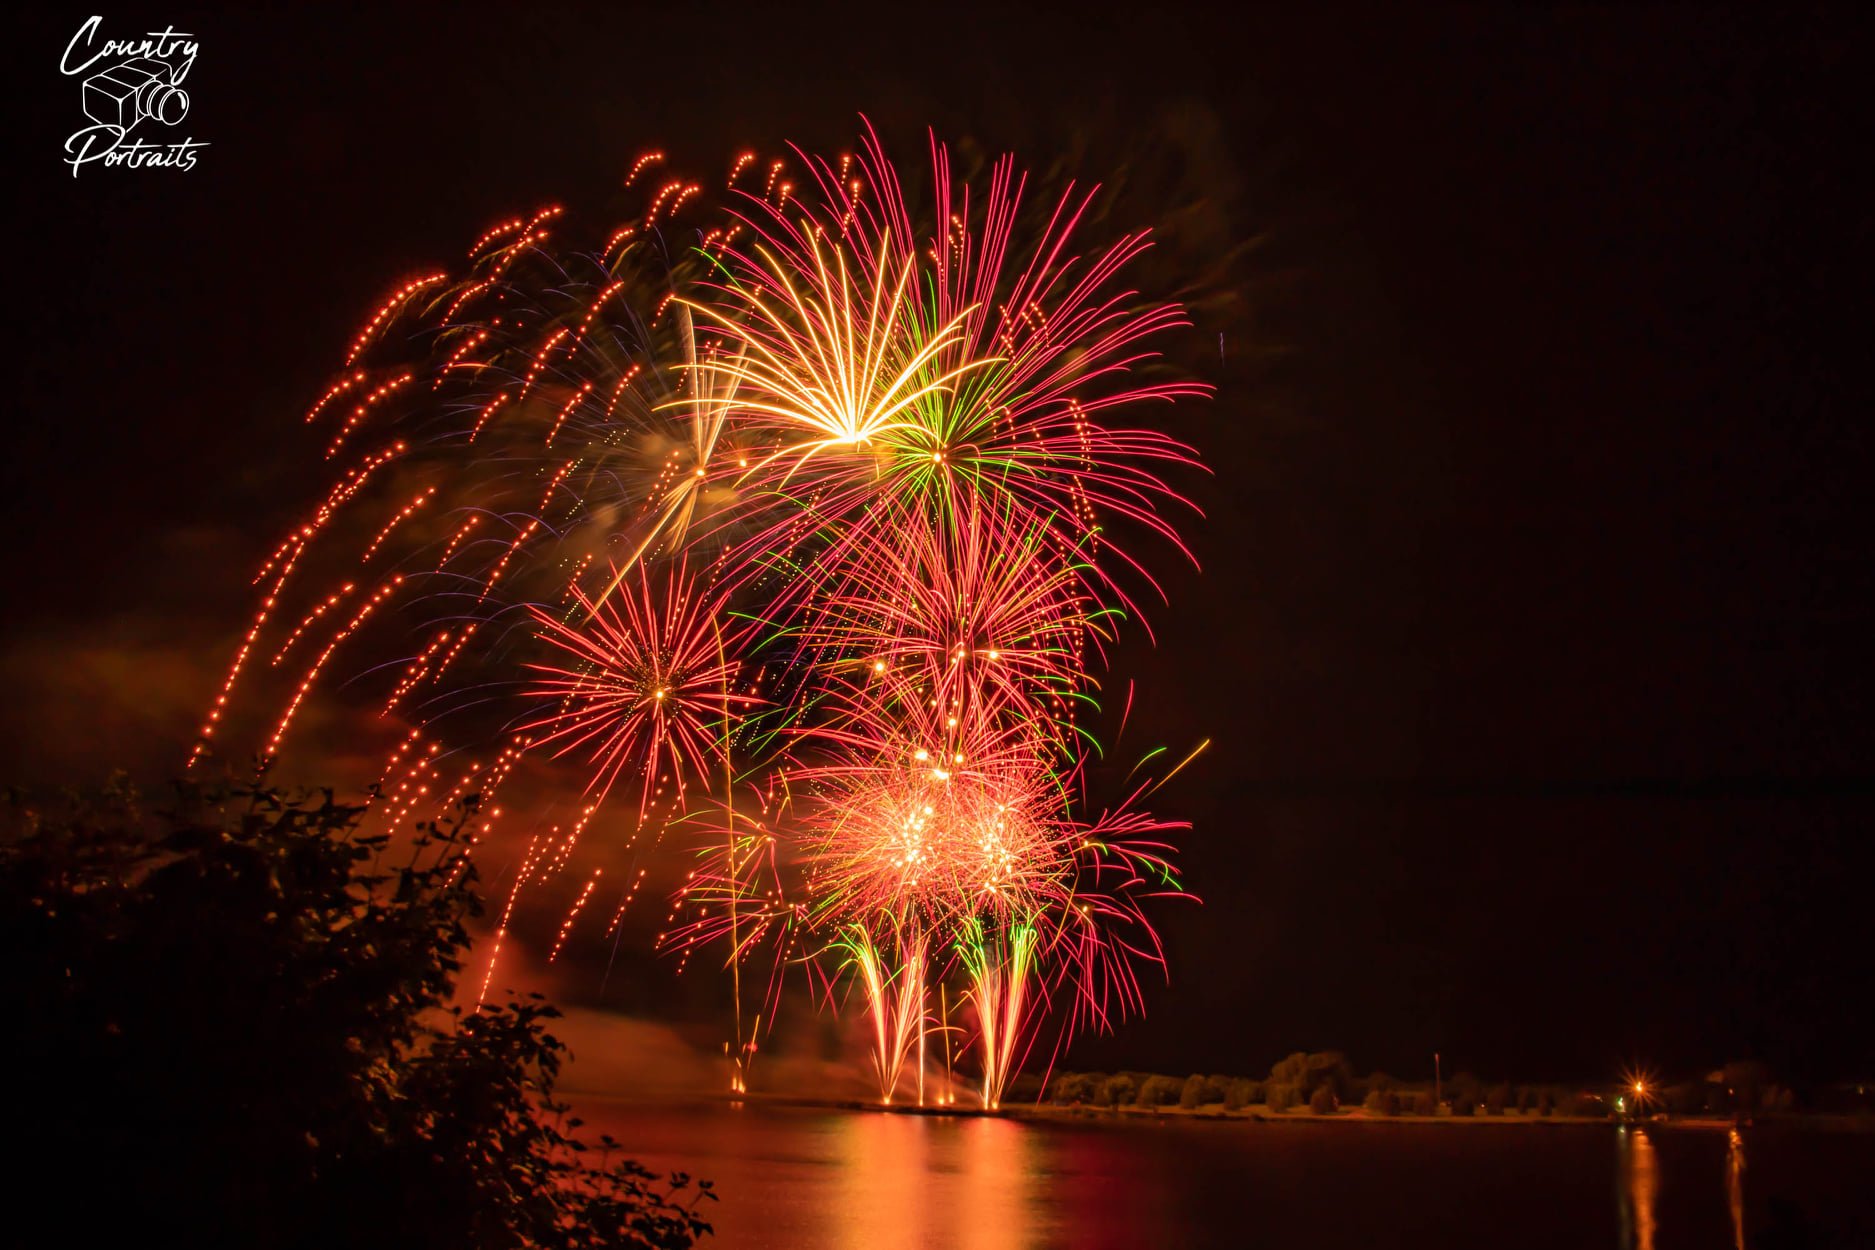 Fabulous Fireworks at Dusk! Photo